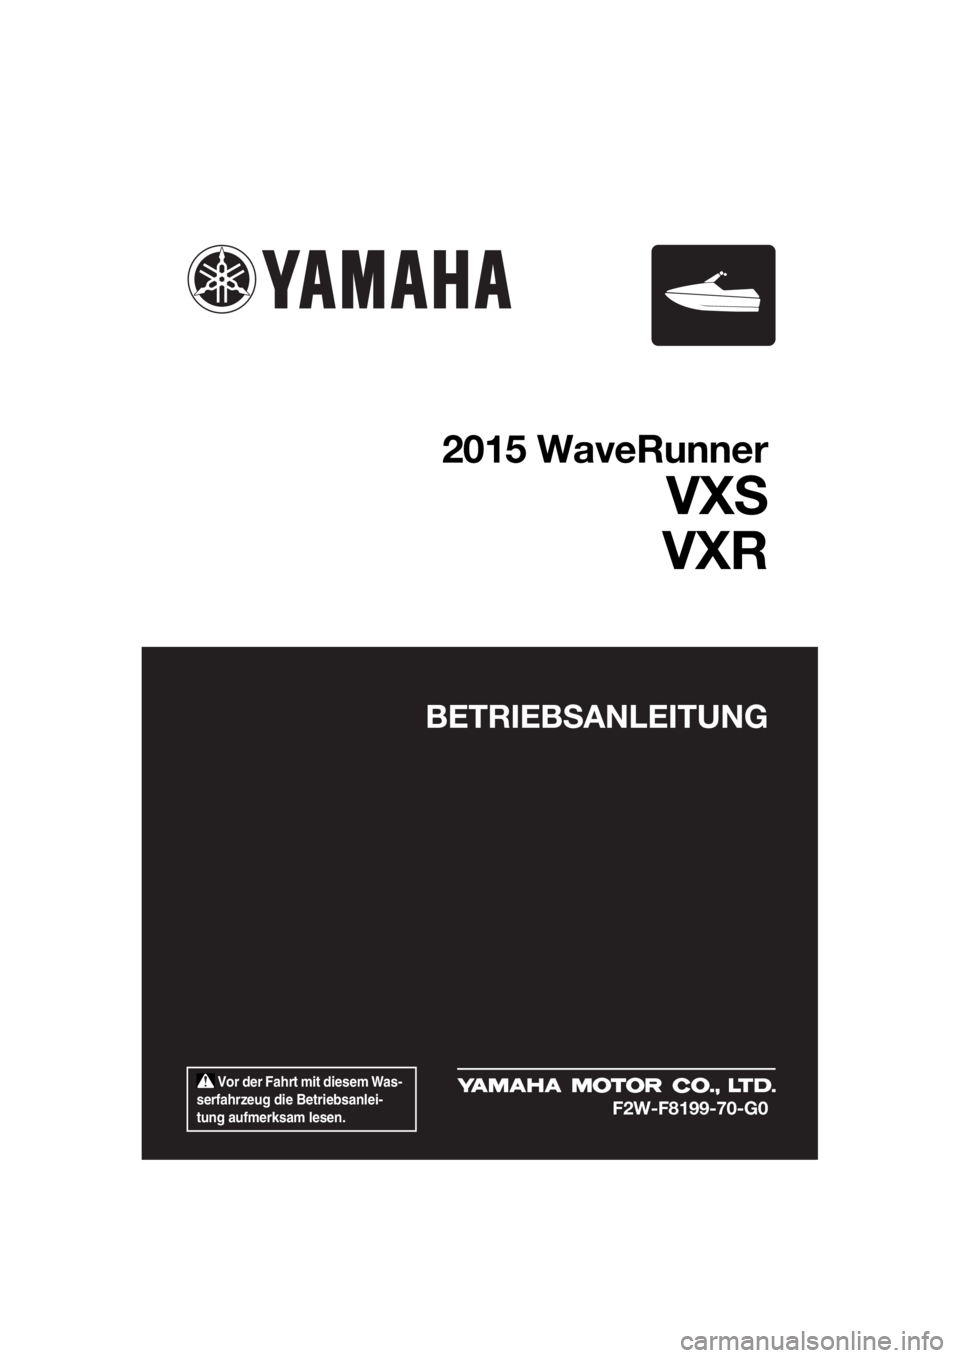 YAMAHA VXR 2015  Betriebsanleitungen (in German)  Vor der Fahrt mit diesem Was-
serfahrzeug die Betriebsanlei-
tung aufmerksam lesen.
BETRIEBSANLEITUNG
2015 WaveRunner
VXS
VXR
F2W-F8199-70-G0
UF2W70G0.book  Page 1  Tuesday, December 8, 2015  1:18 PM